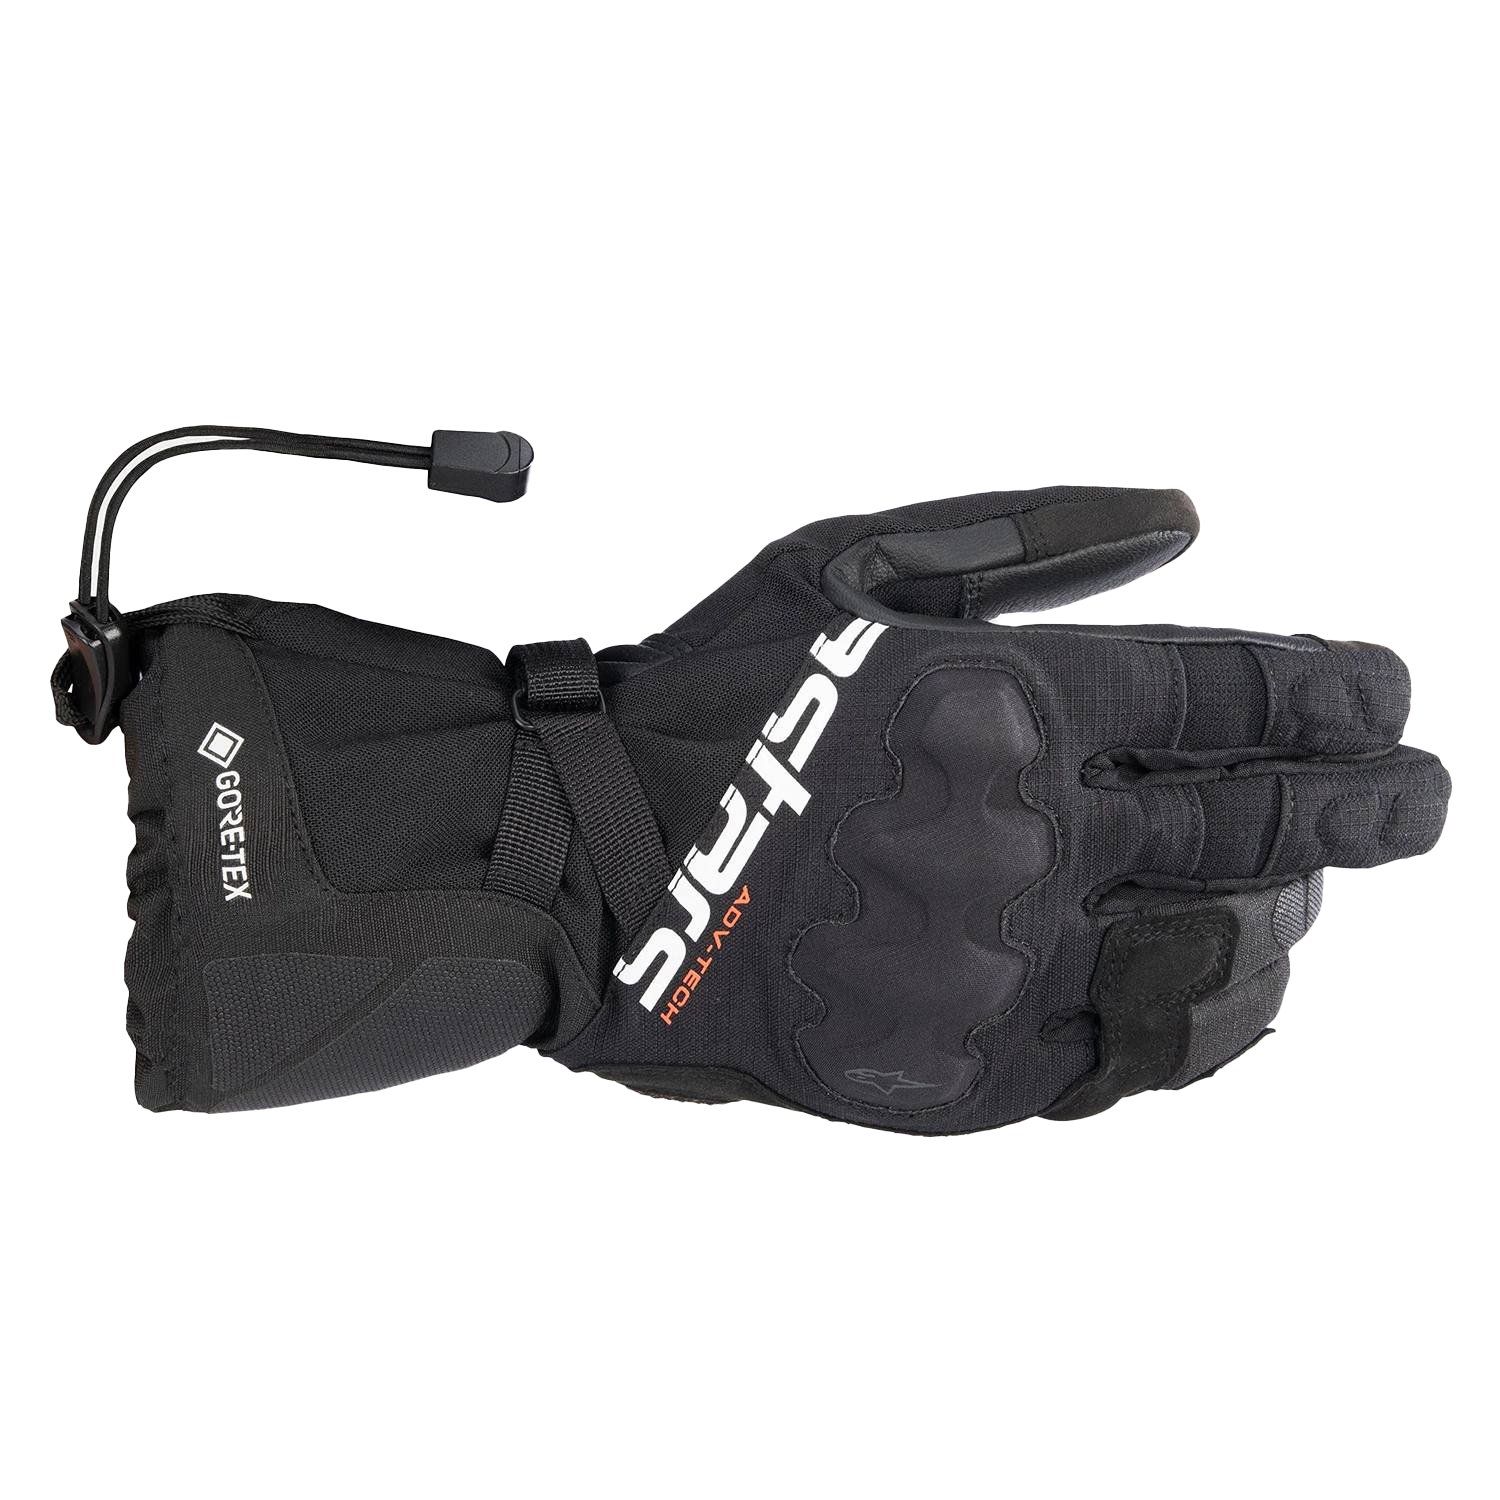 Image of Alpinestars Xt-5 Gore-Tex Gloves Black Size L ID 8059347194424